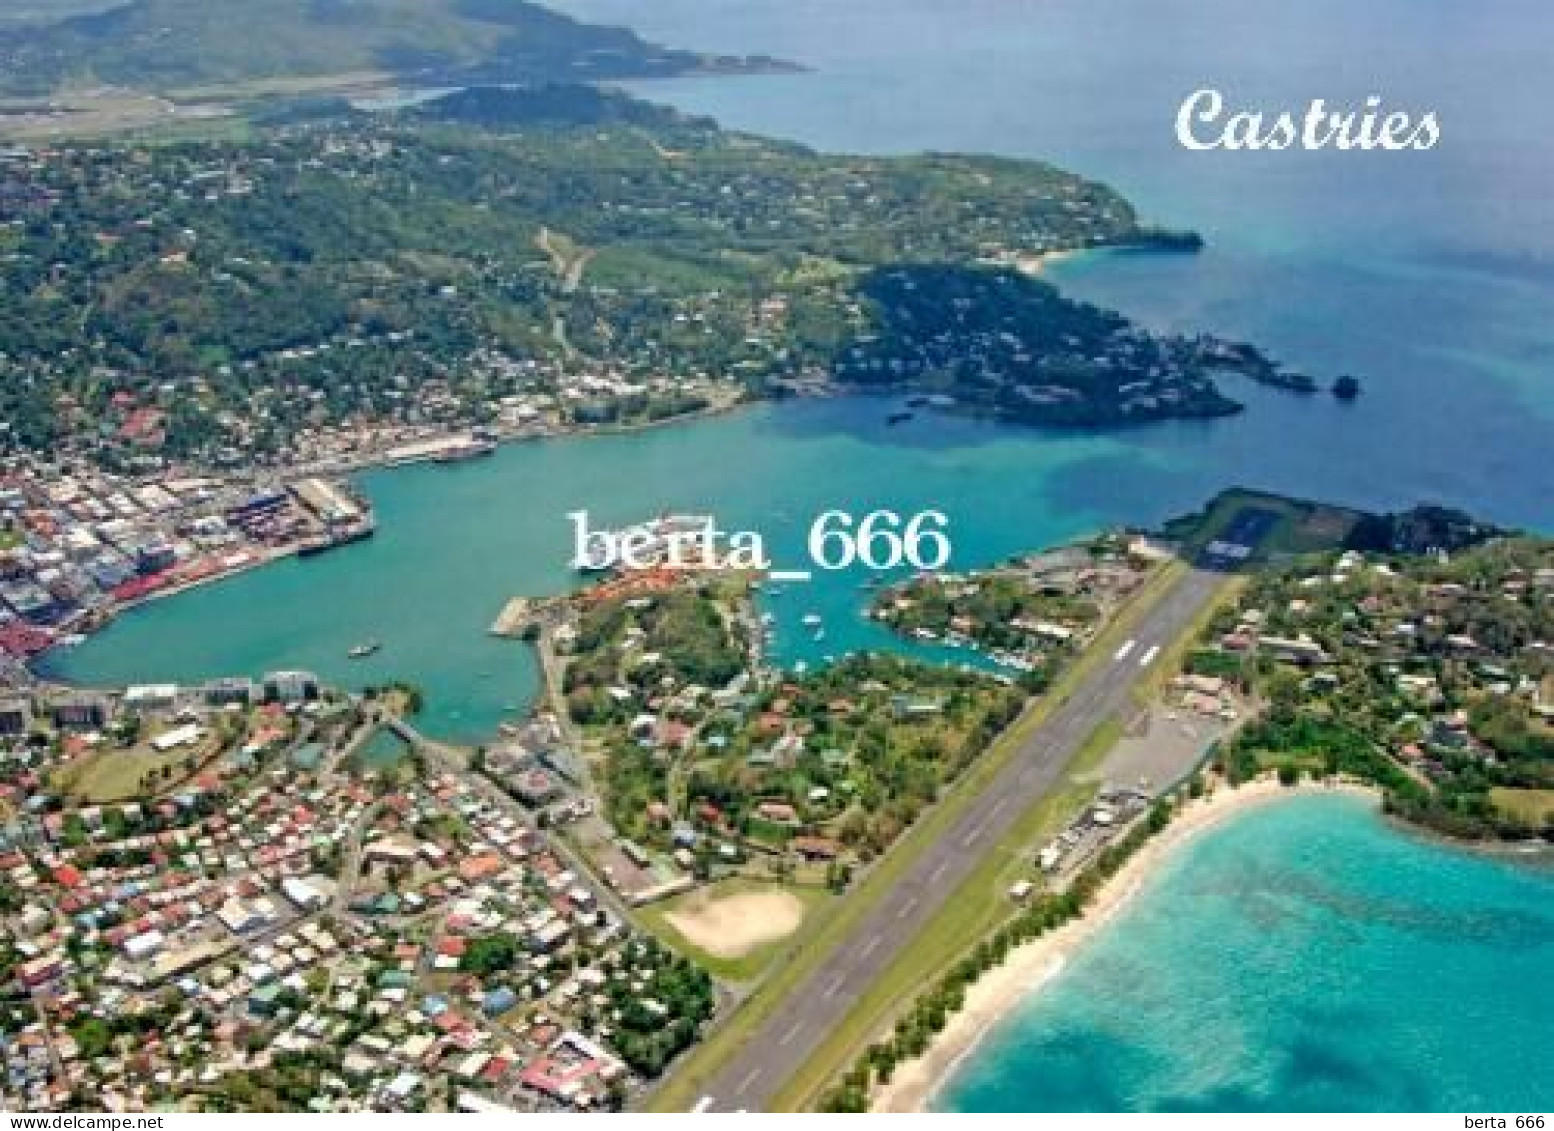 Saint Lucia Island Castries Aerial View Runway New Postcard - Sainte-Lucie